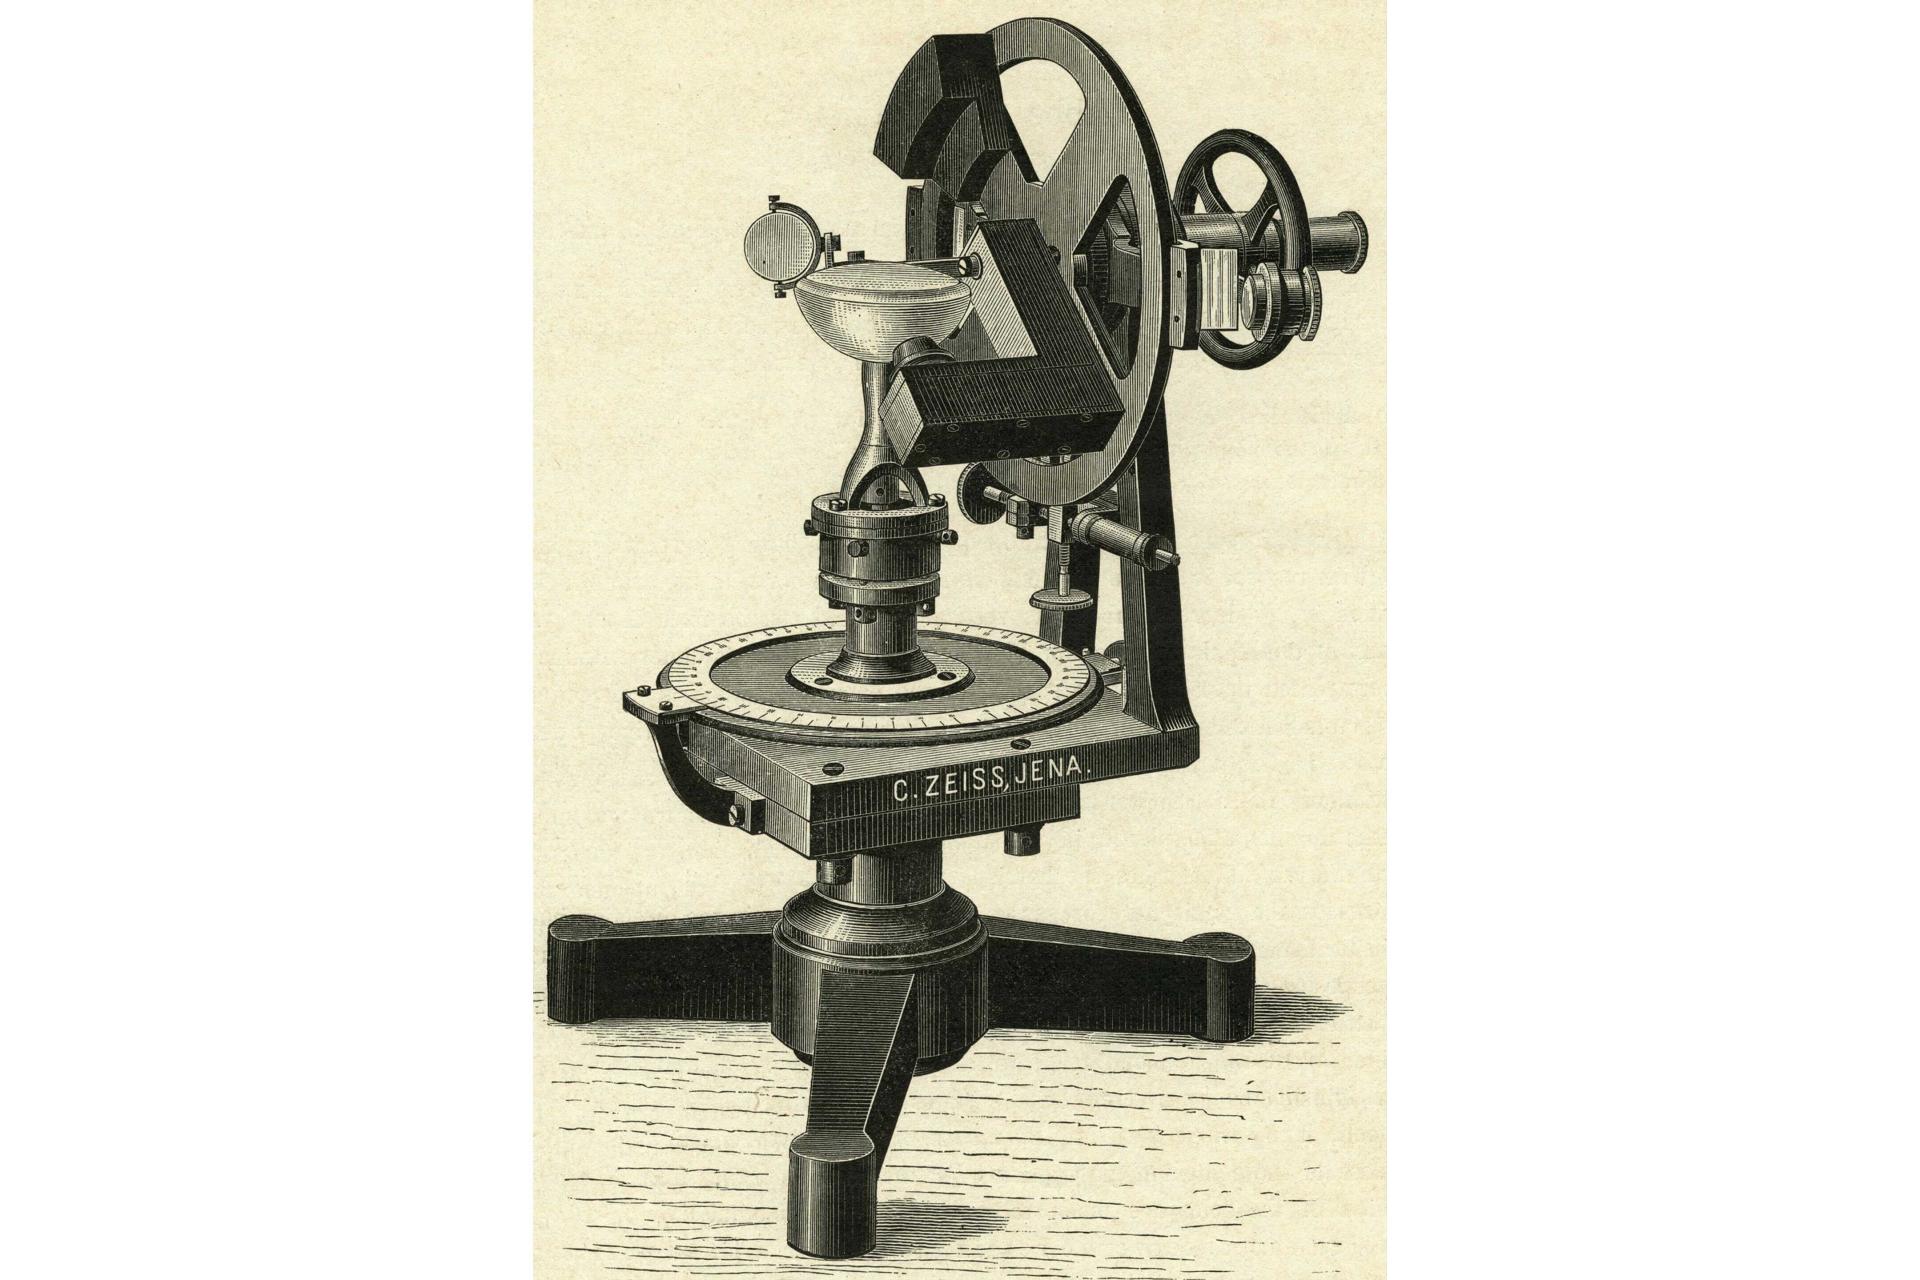 Grosses Krystallrefractometer nach Abbe, 1893.